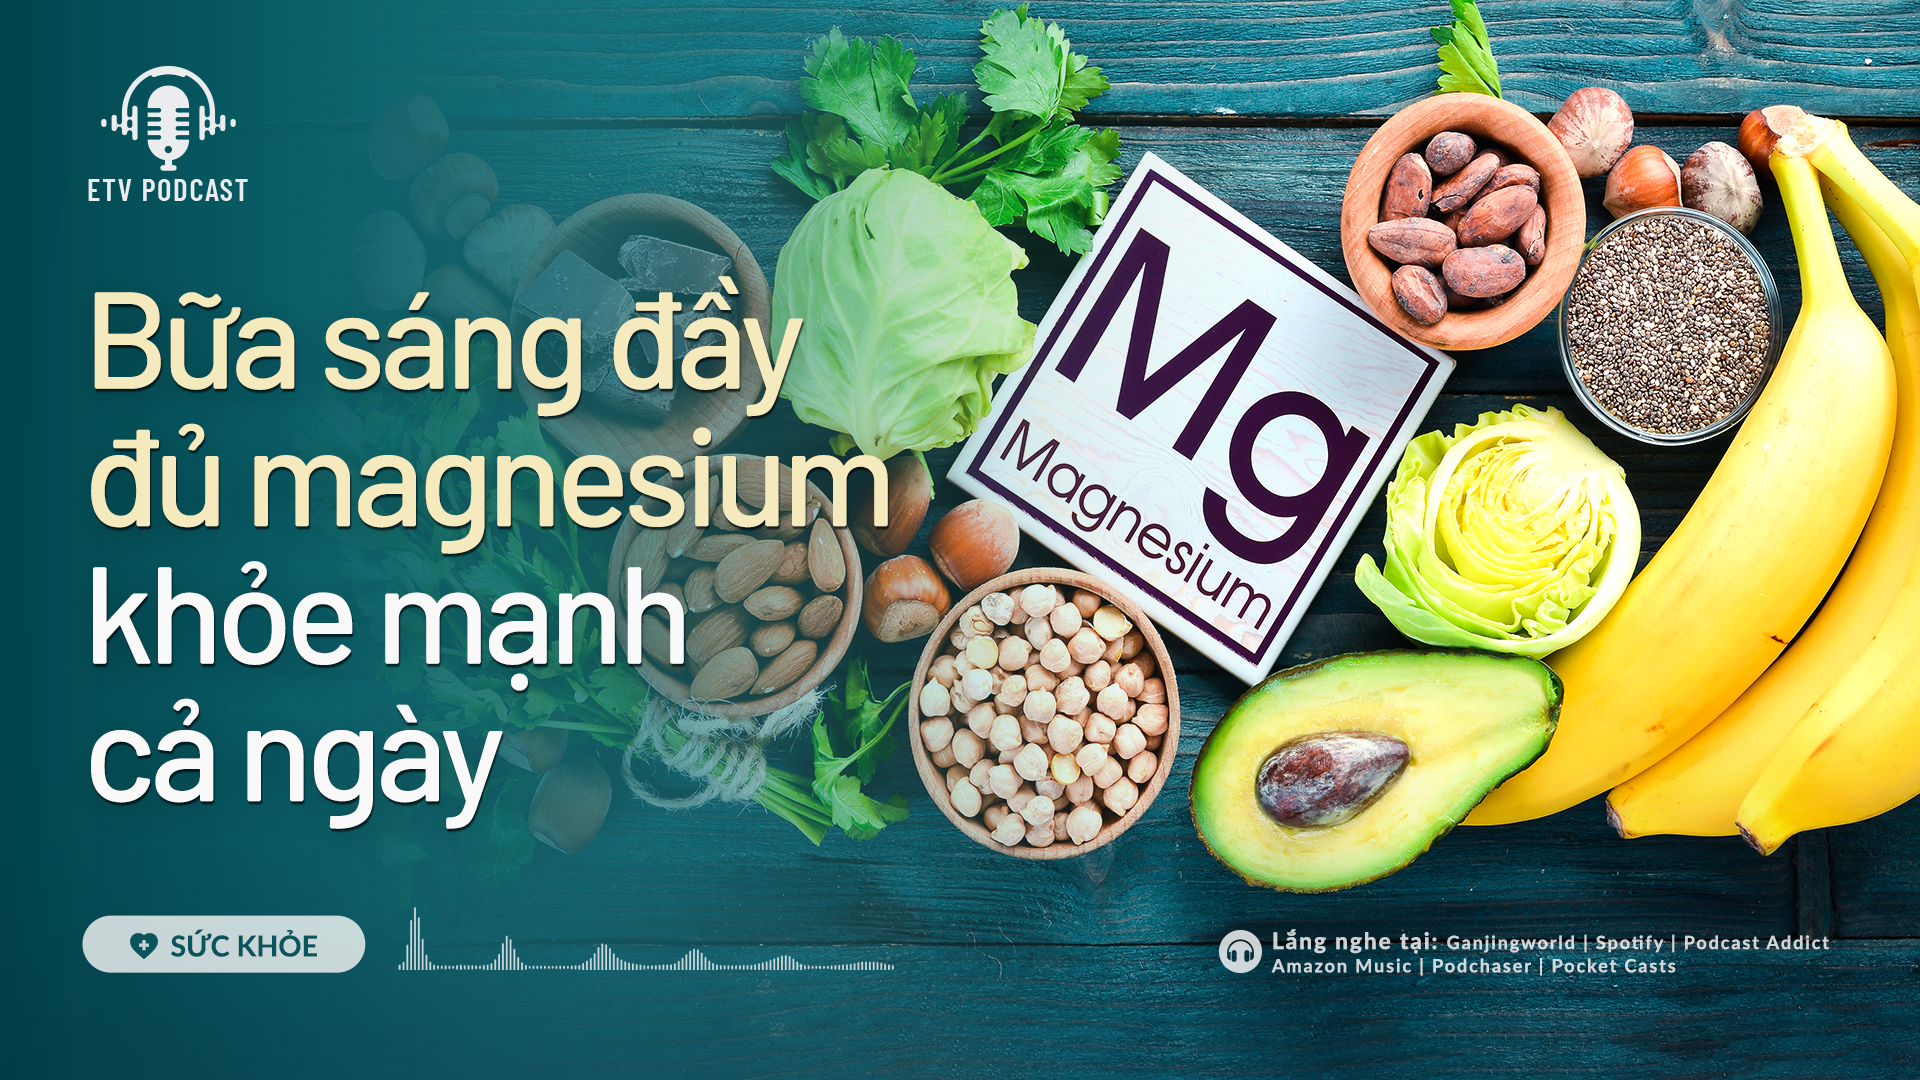 Bữa sáng đầy đủ magnesium khỏe mạnh cả ngày | Sức khỏe 